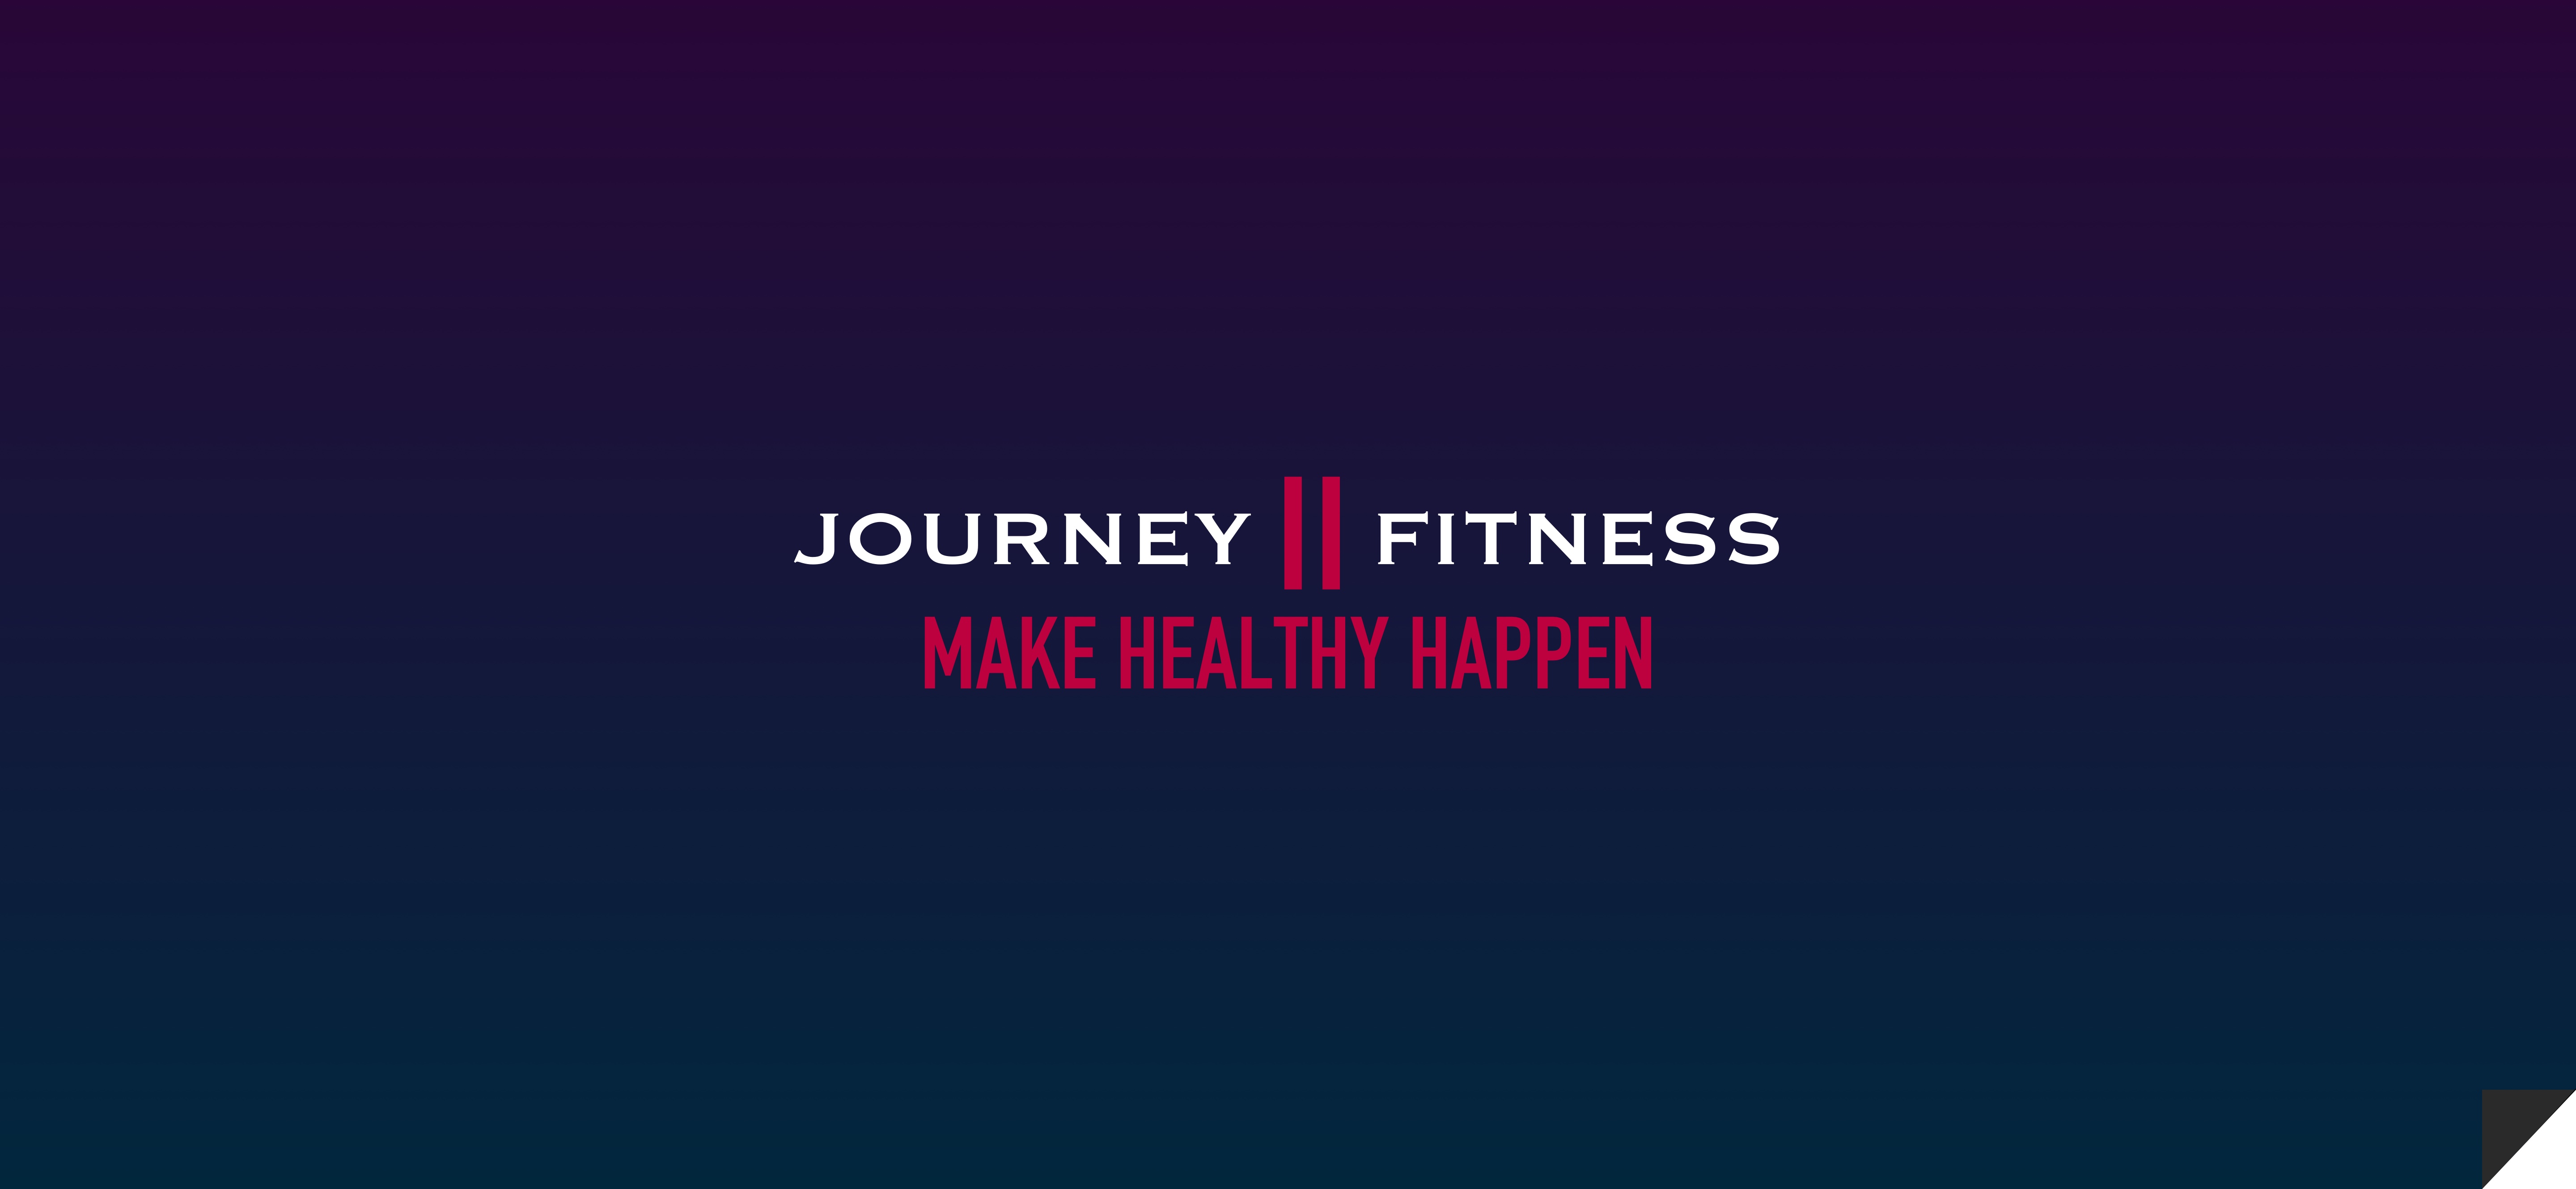 Journey II Fitness UX Website